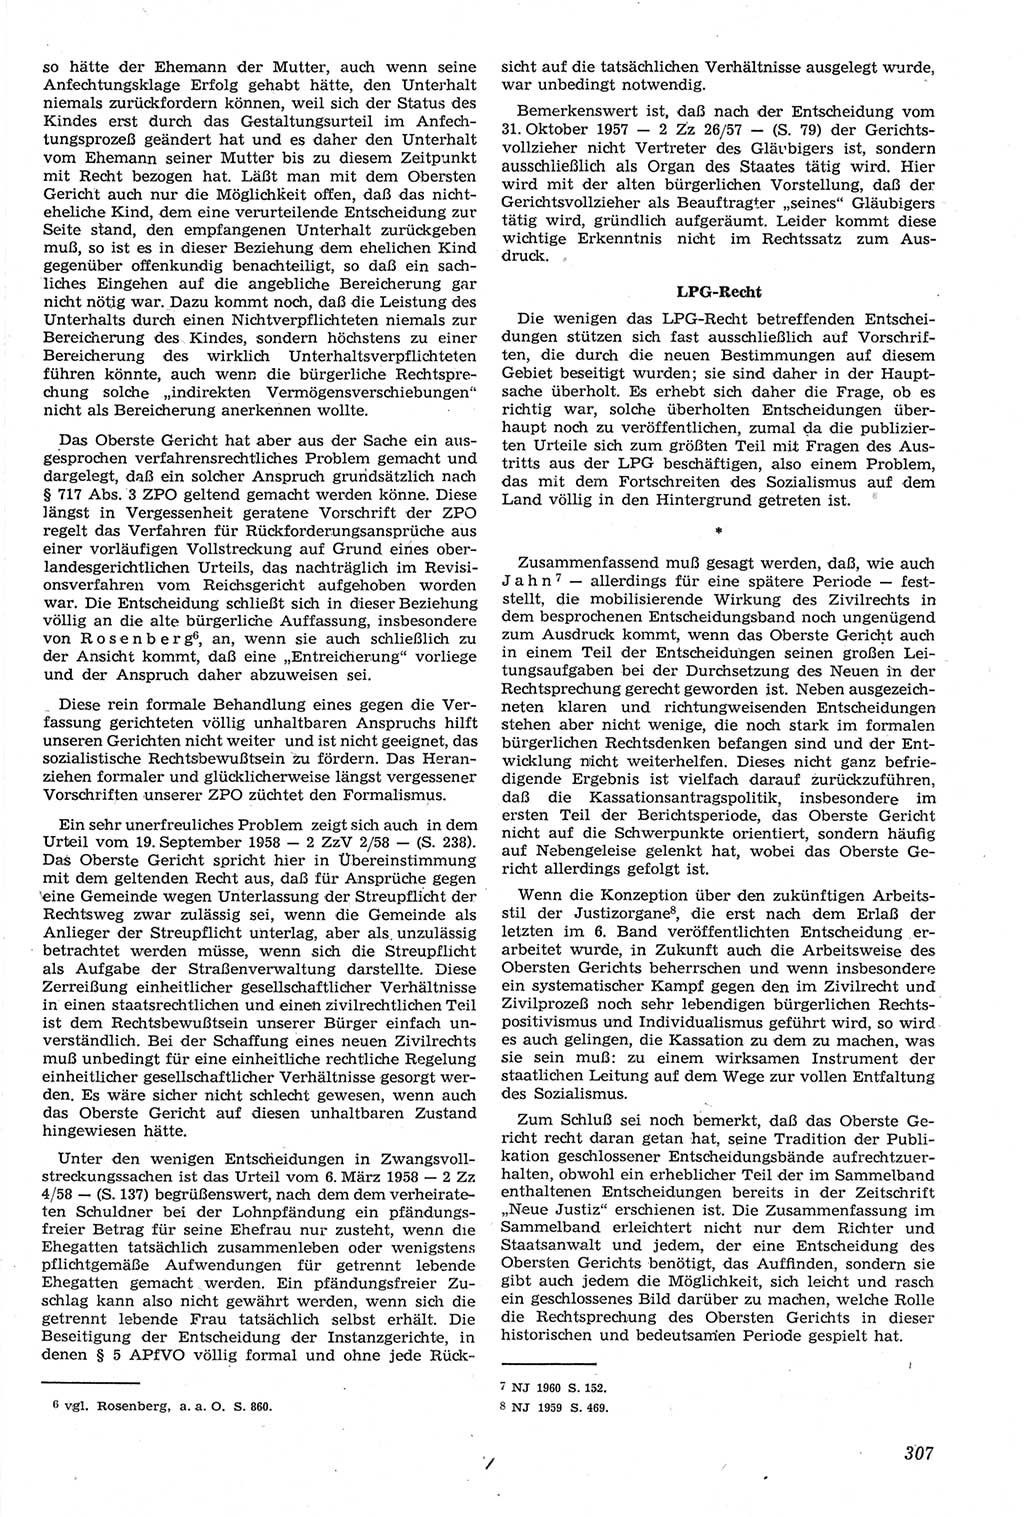 Neue Justiz (NJ), Zeitschrift für Recht und Rechtswissenschaft [Deutsche Demokratische Republik (DDR)], 14. Jahrgang 1960, Seite 307 (NJ DDR 1960, S. 307)